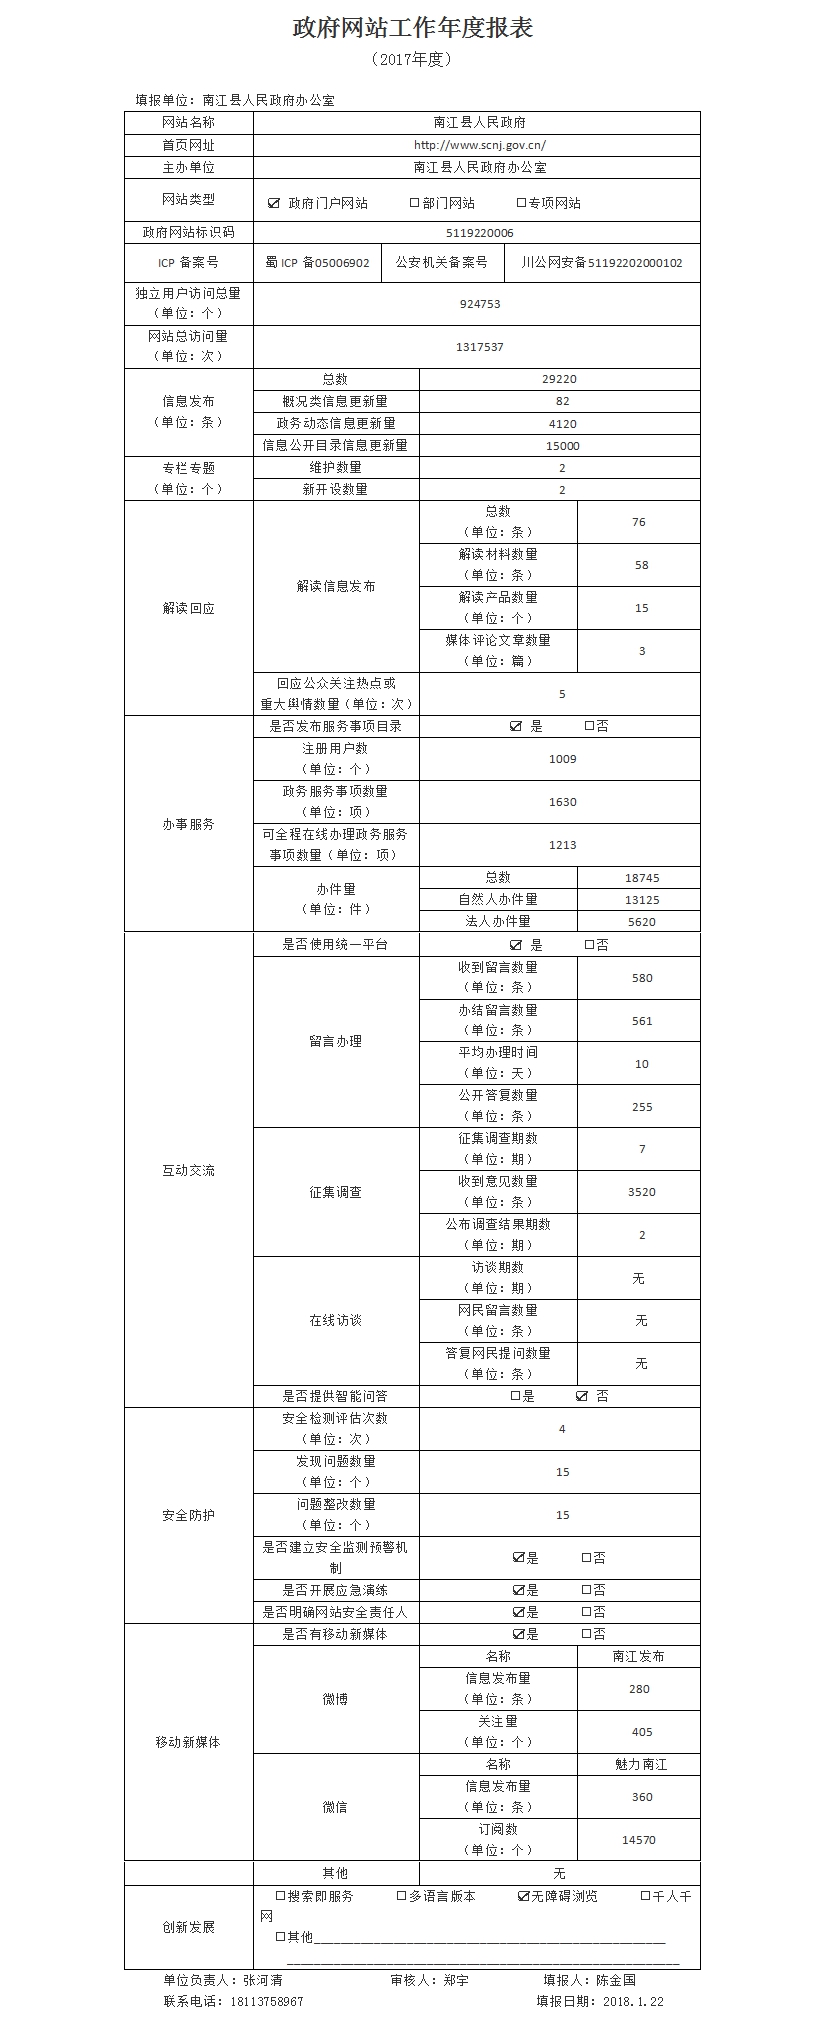 （南江县）政府网站工作年度报表(1).jpg